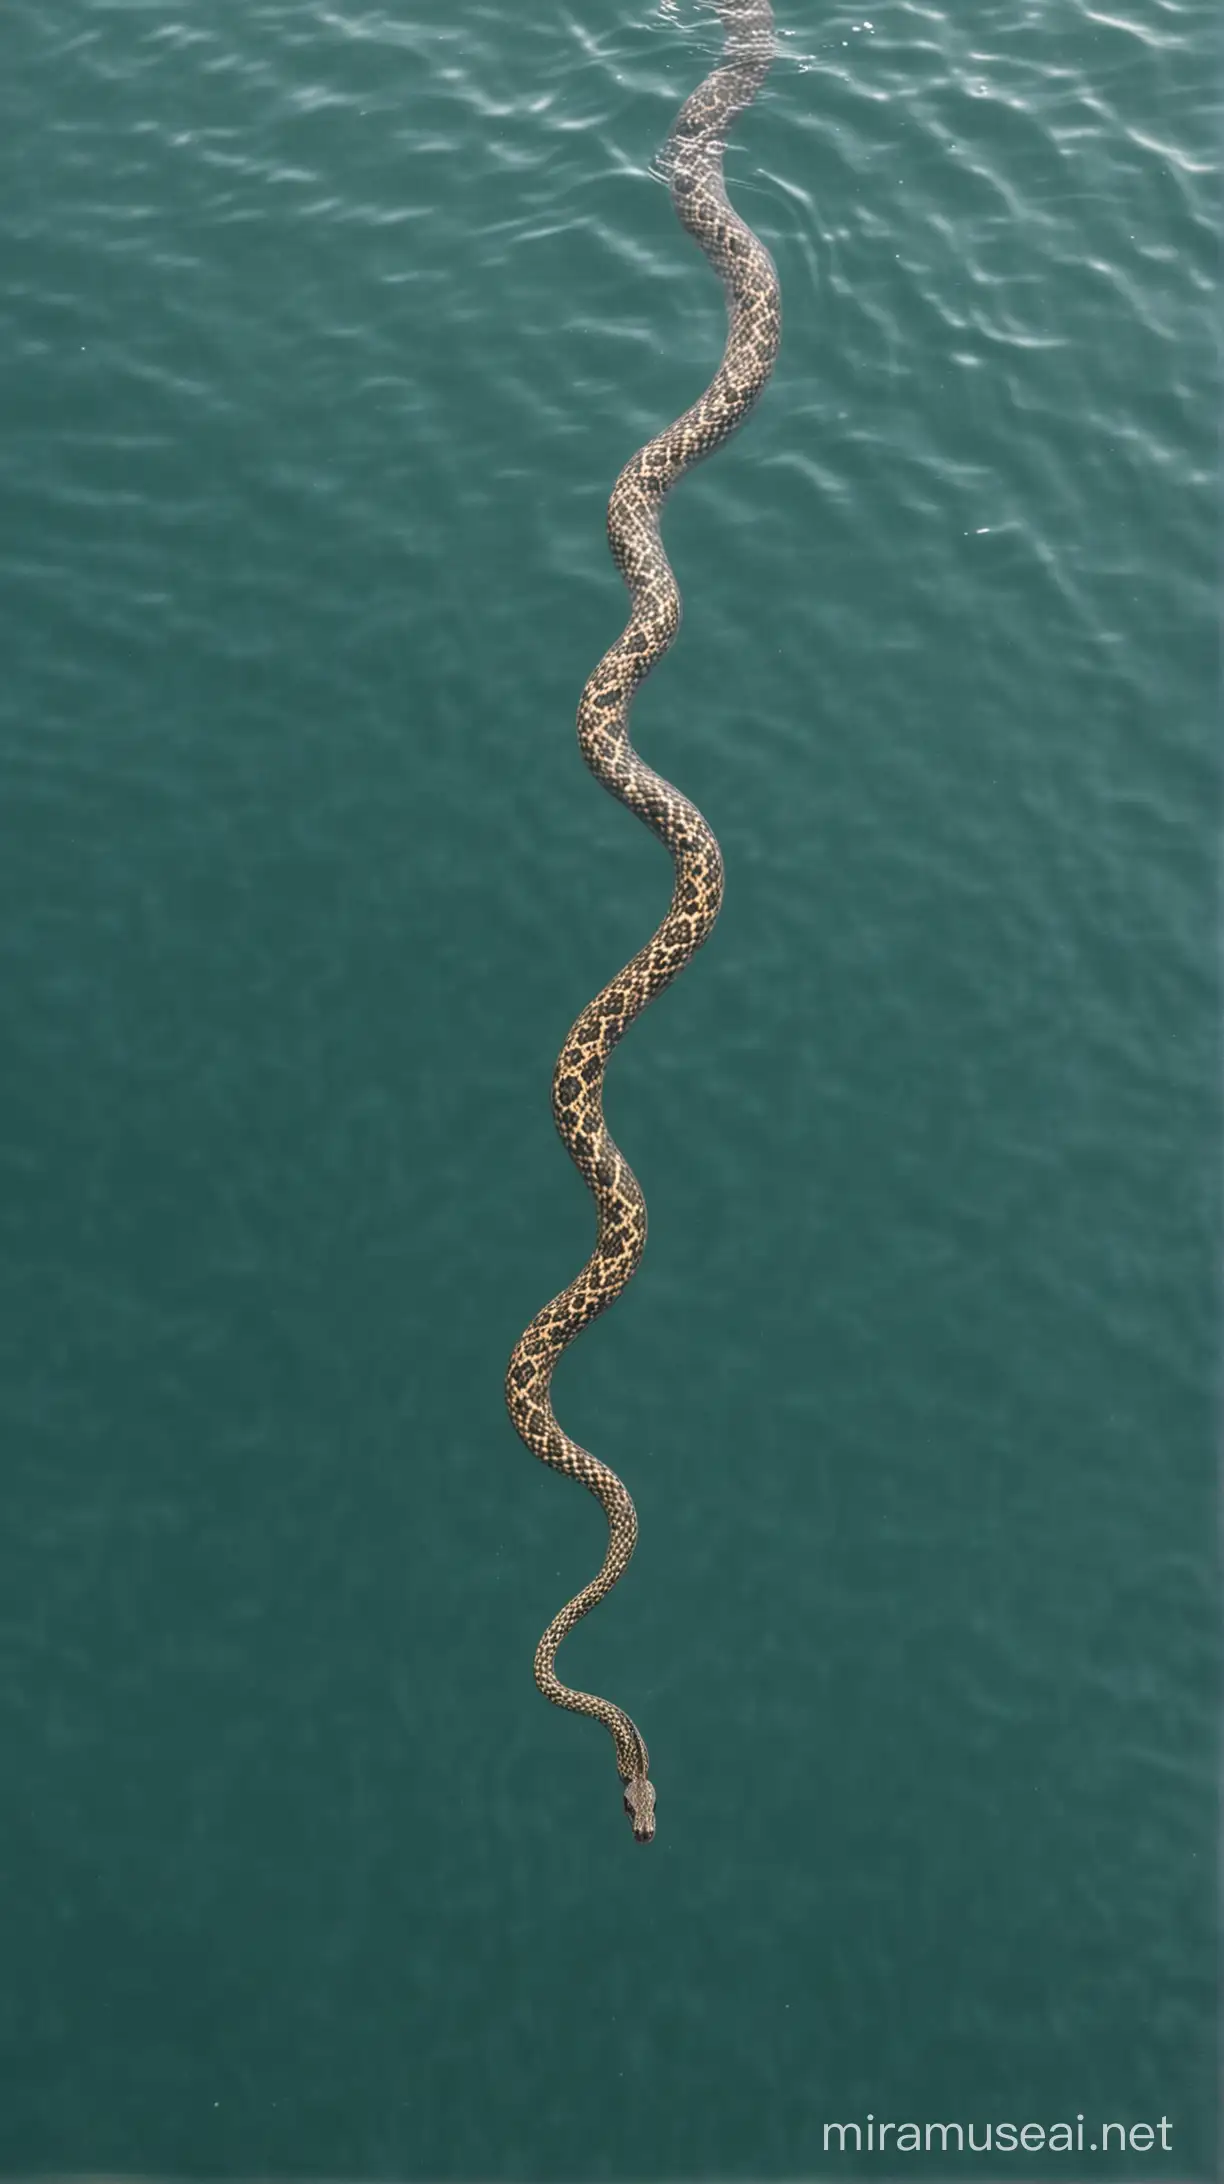 Aerial View of Snake Swimming in Vast Ocean Waters